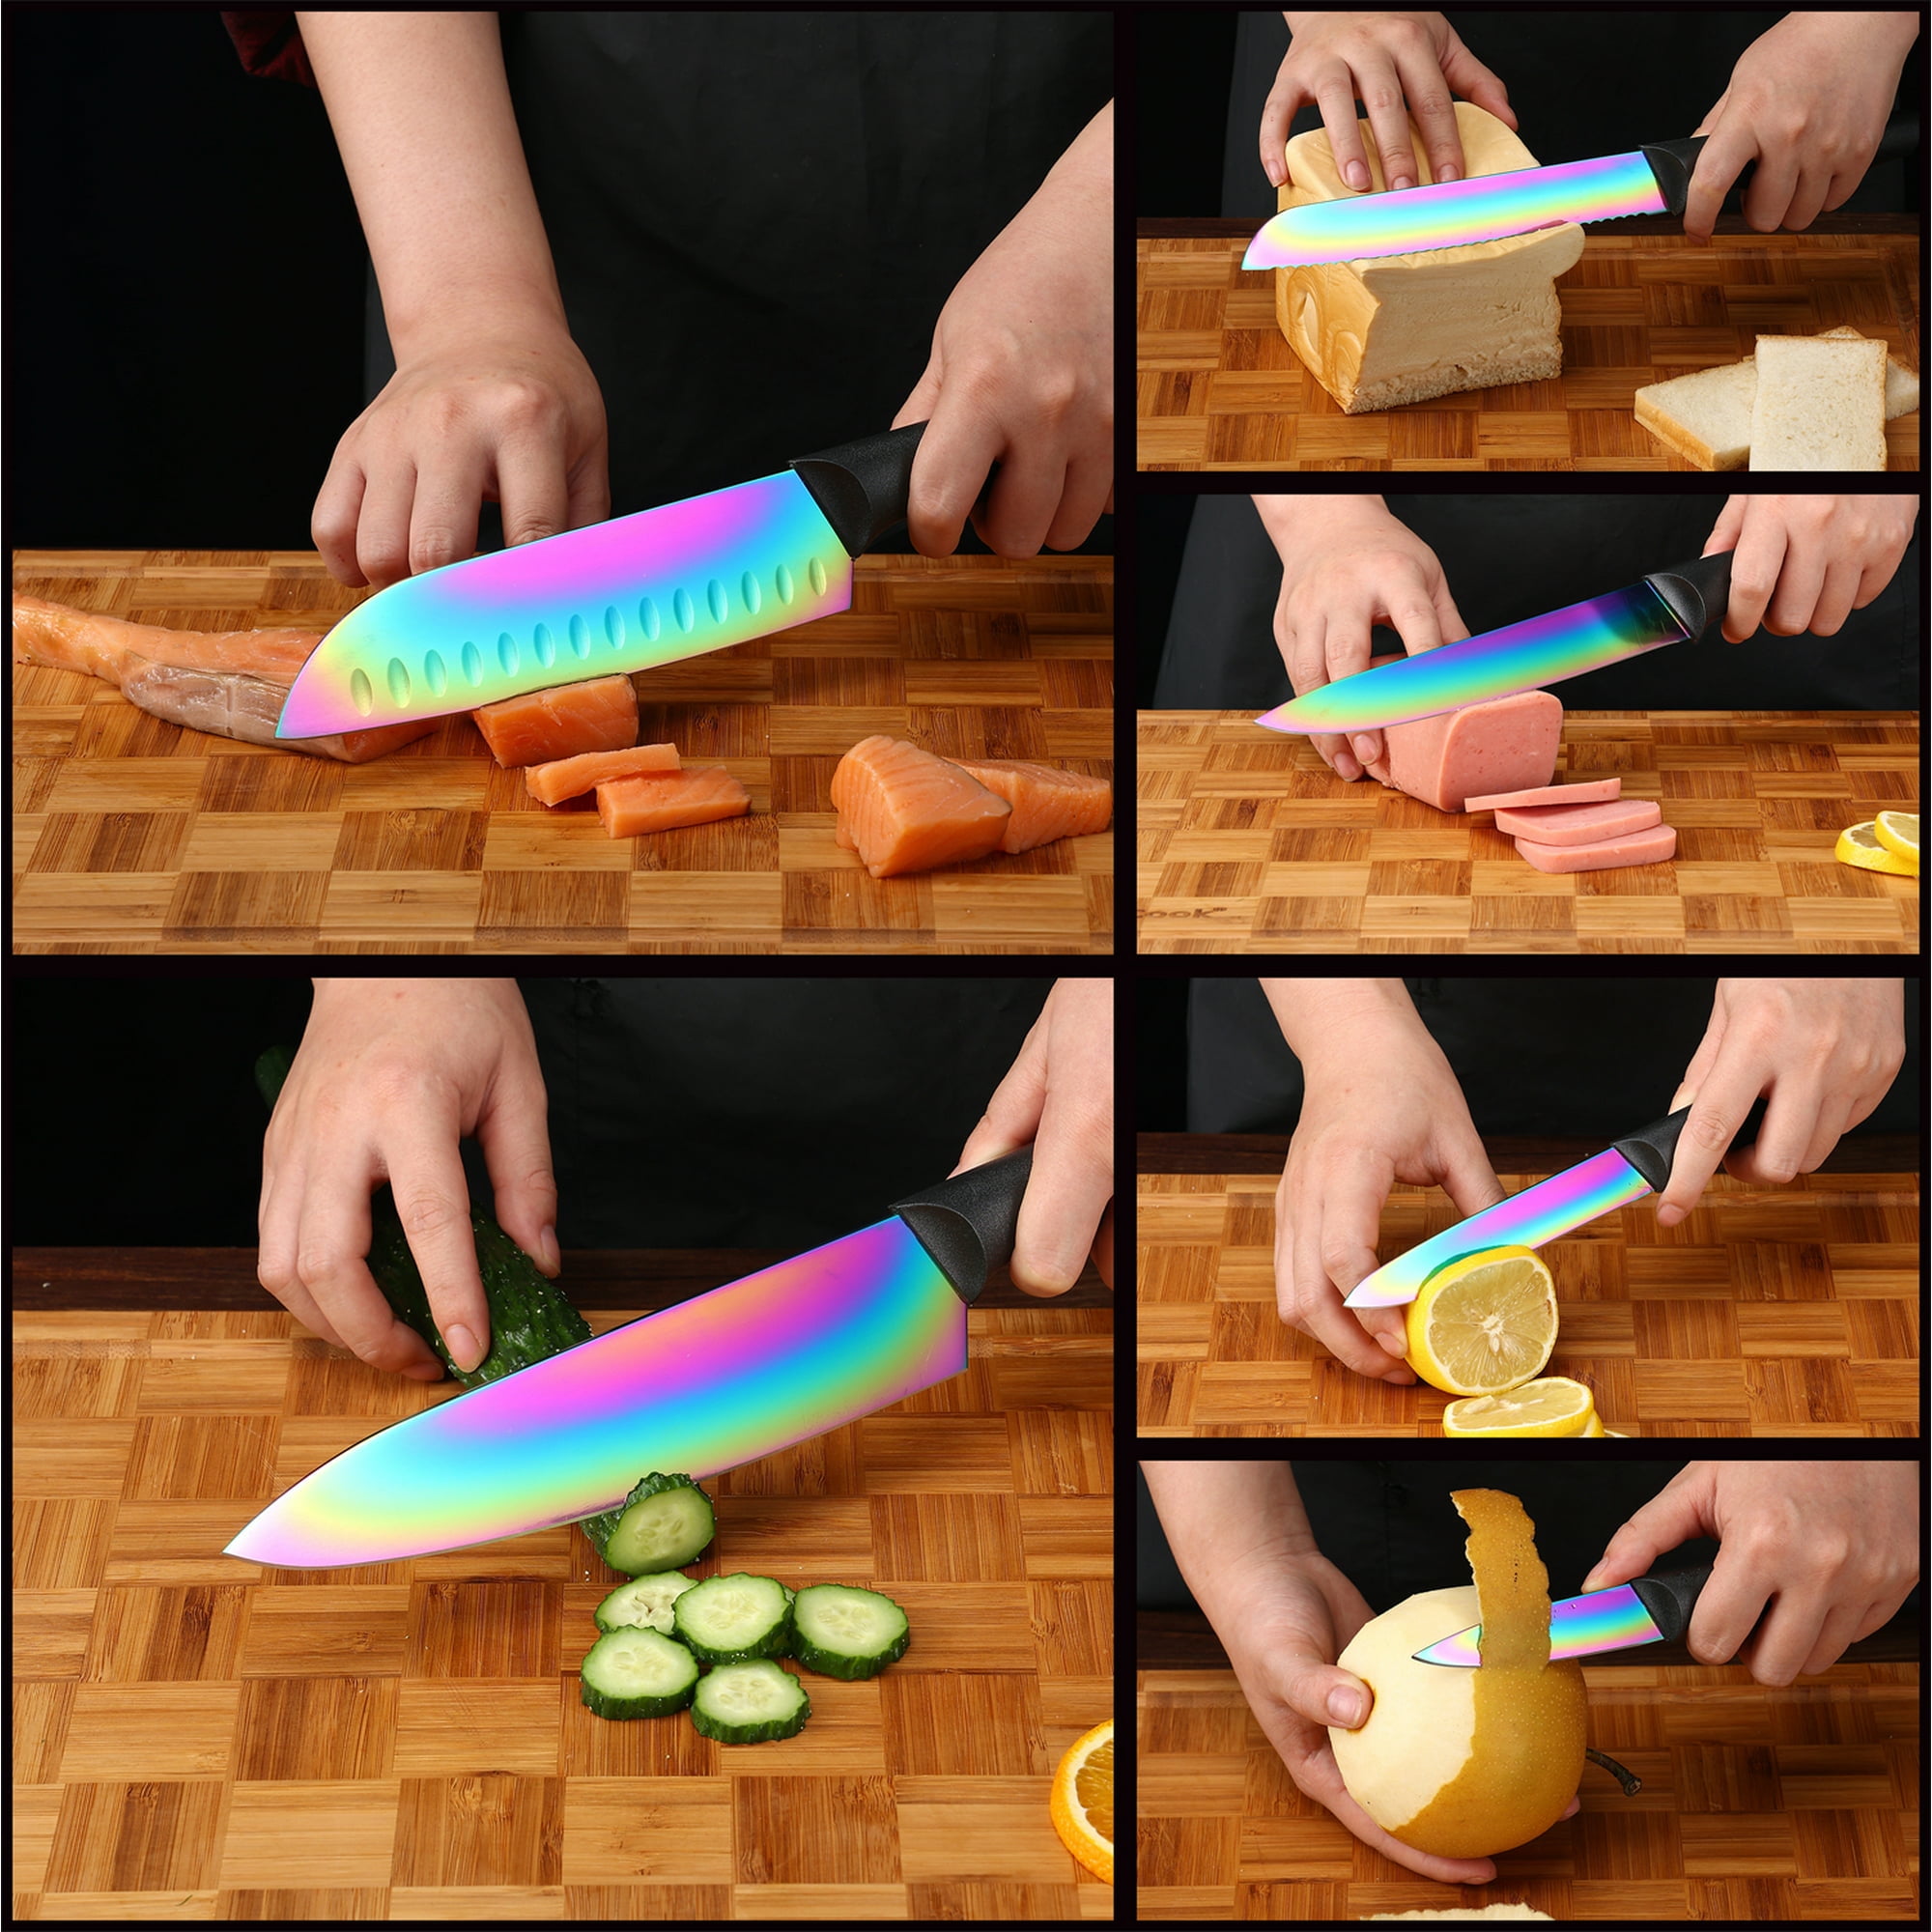 12 Piece Dishwasher Safe Knife Set - 6 Steel Rainbow Kitchen